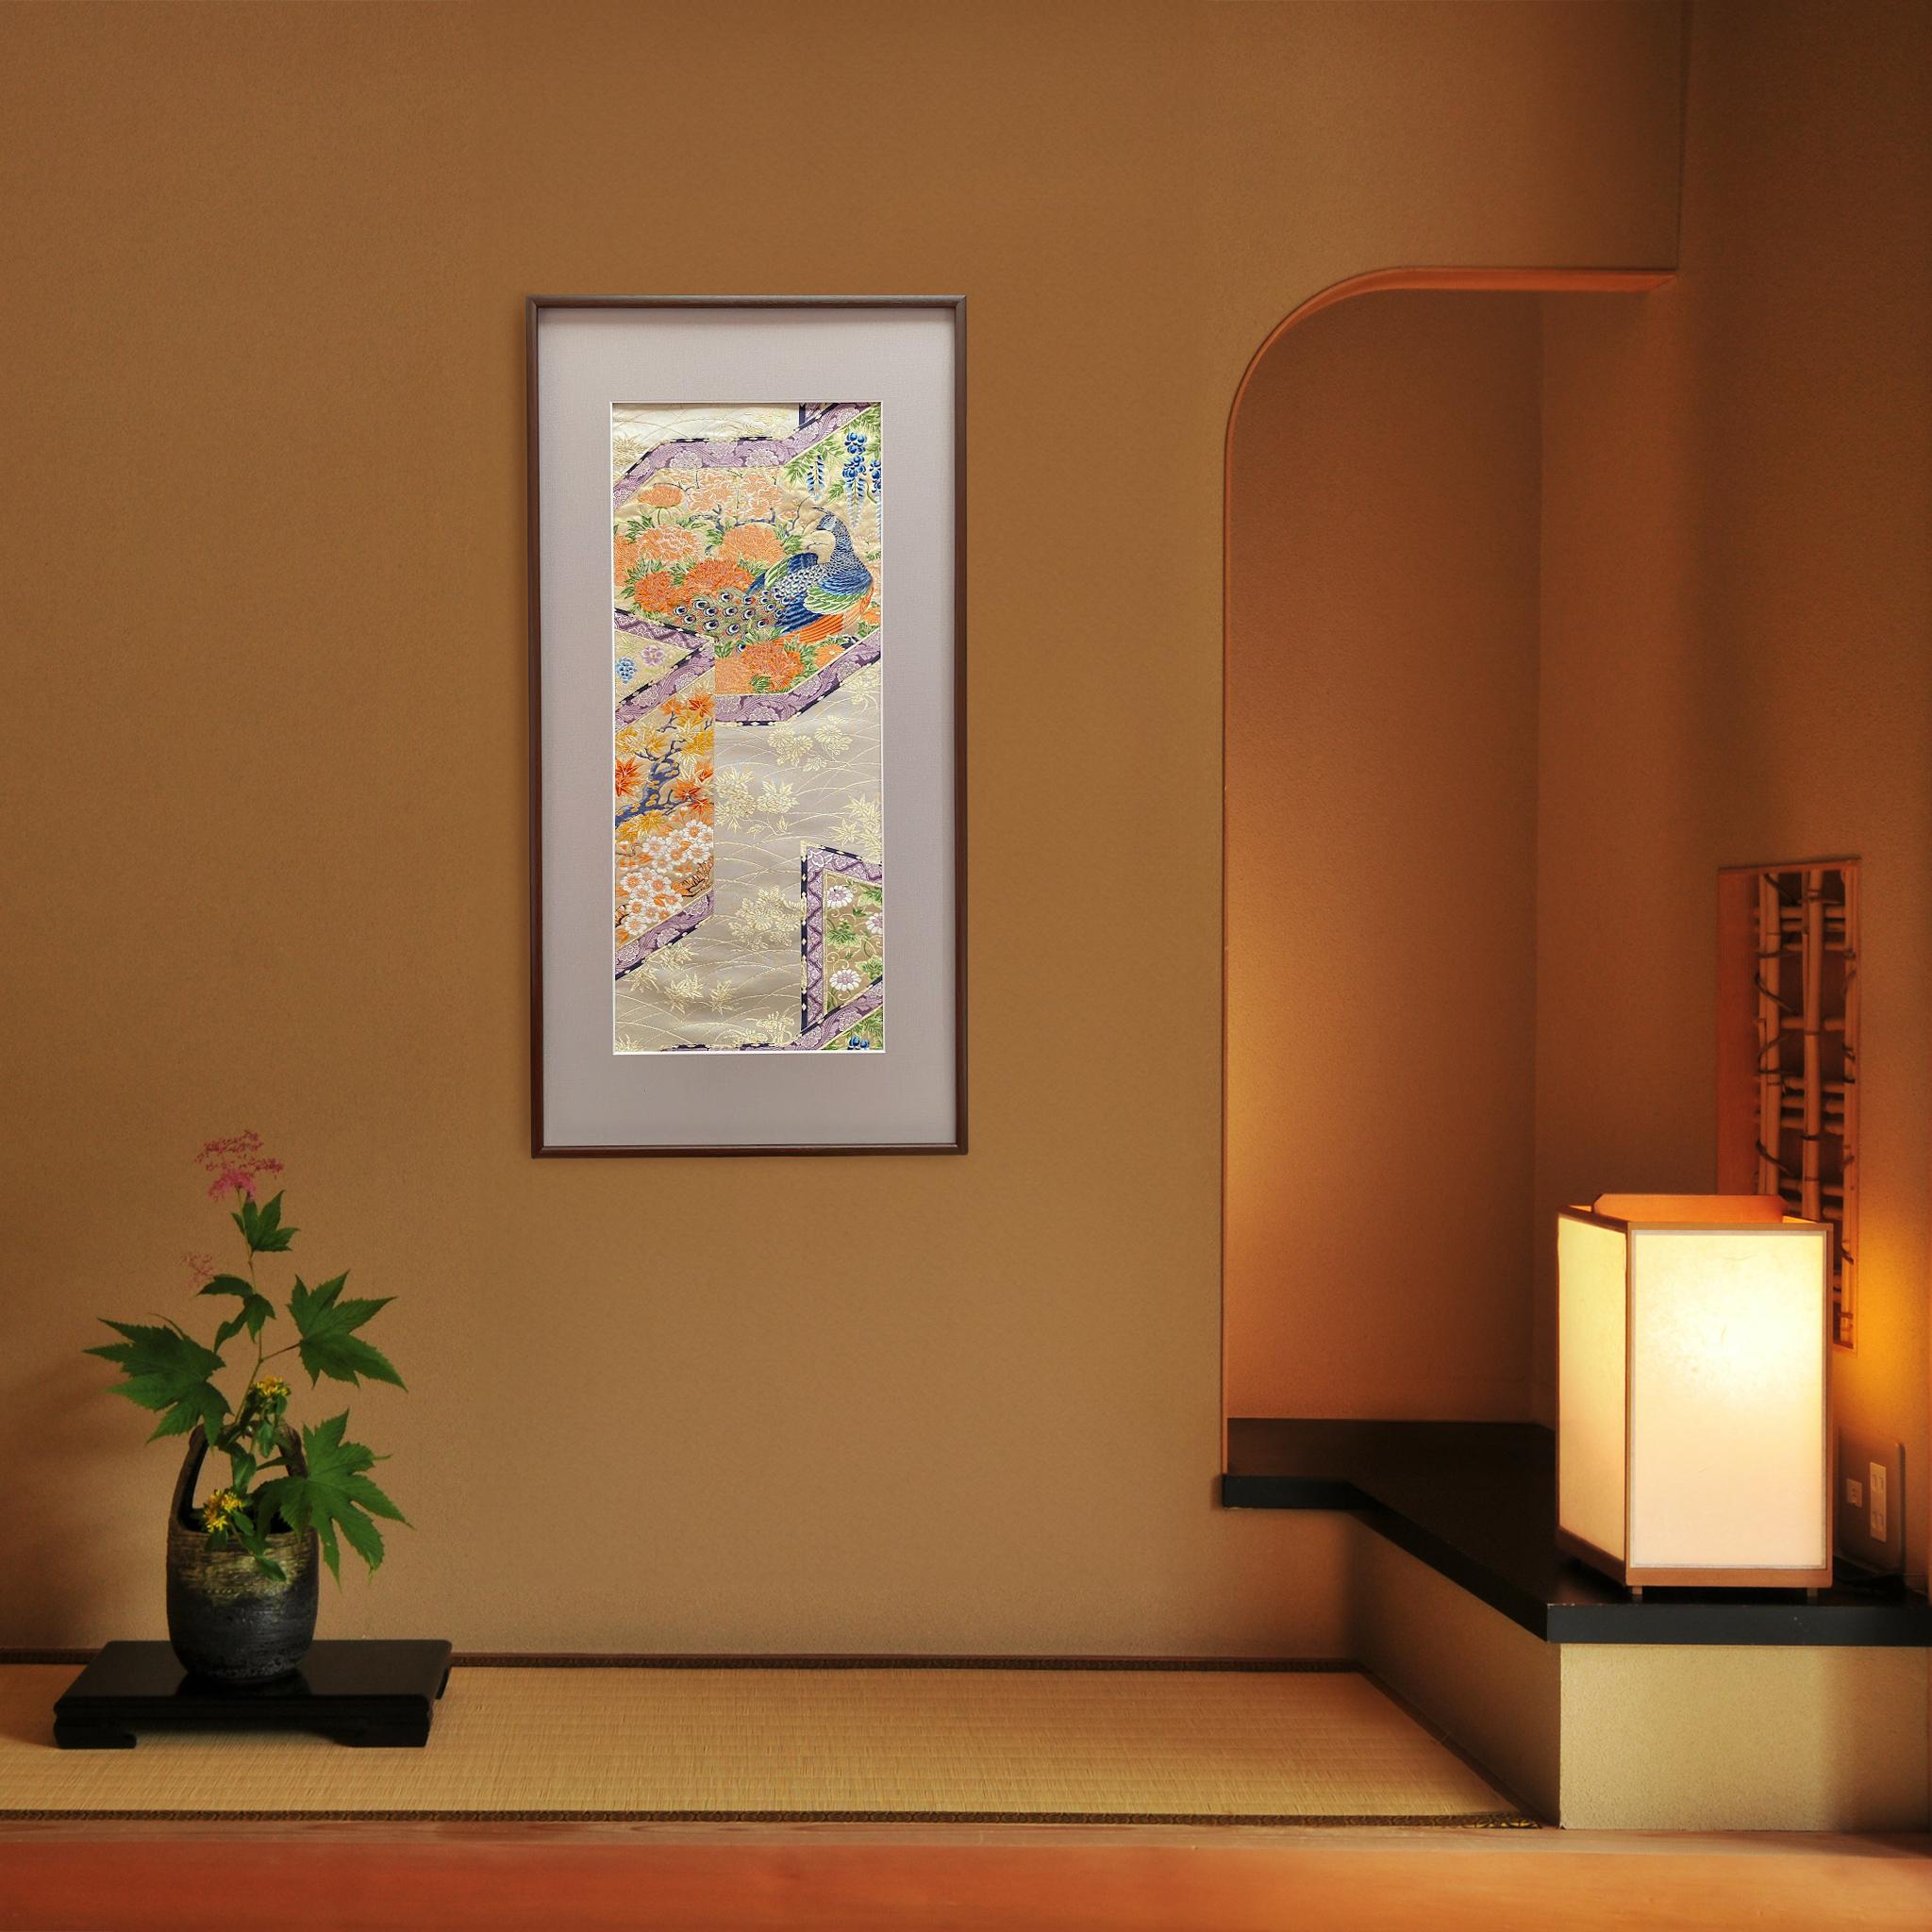 Kimono japonais d'art par Kimono-Couture
Titre:Le roi du paon

Nous aimerions vous présenter cet art mural Kimono exquis, méticuleusement brodé par des artisans japonais qualifiés, qui est unique en son genre dans le monde entier.

Nous sommes très